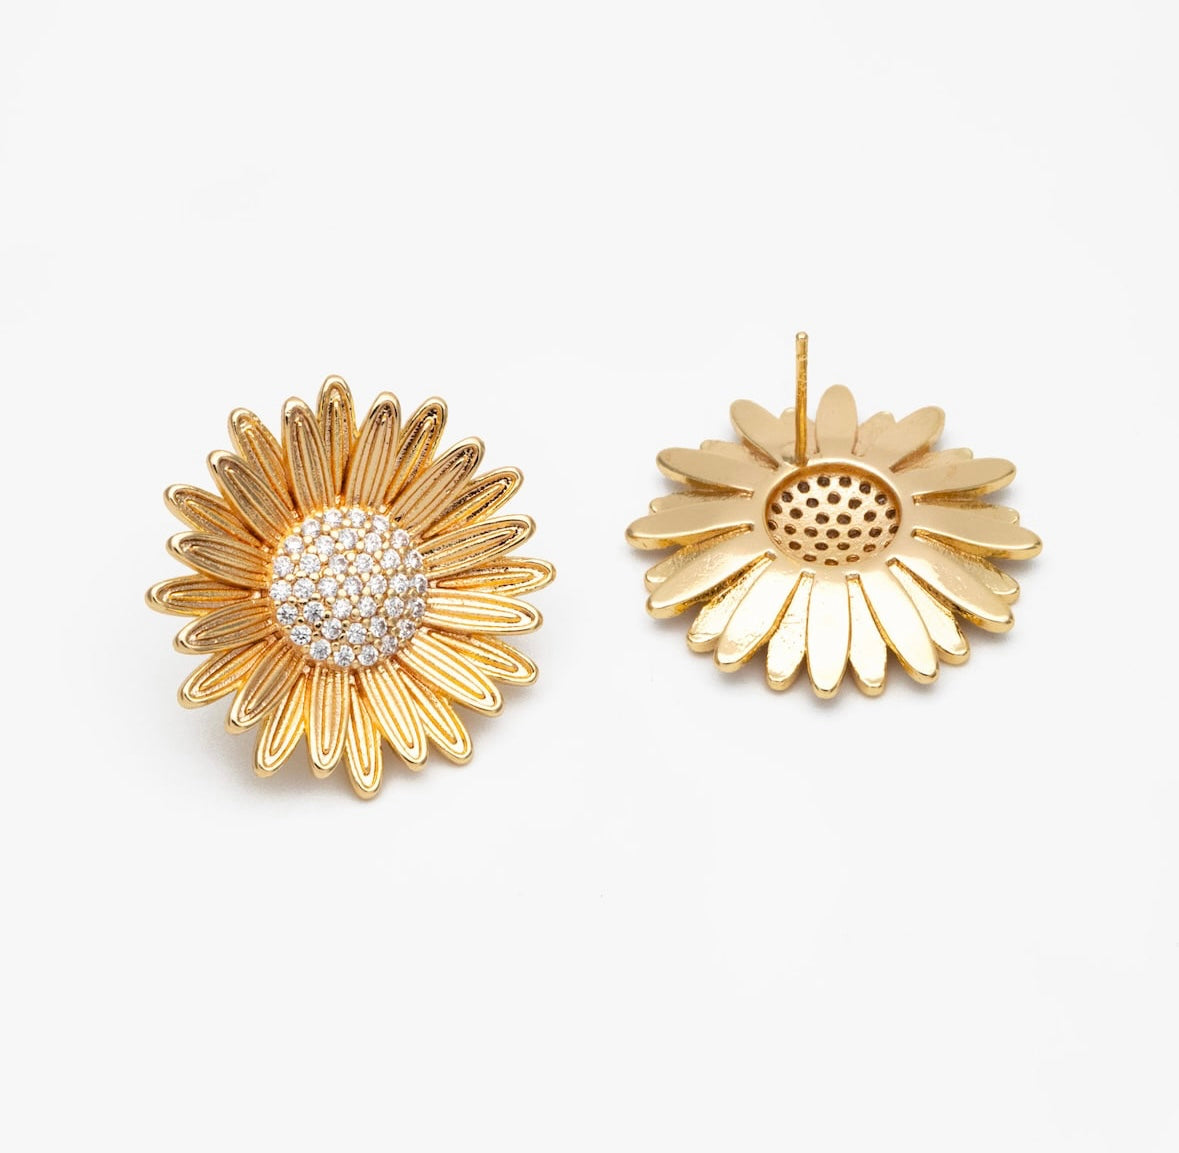 Sunflower Stud Earrings (Gold)